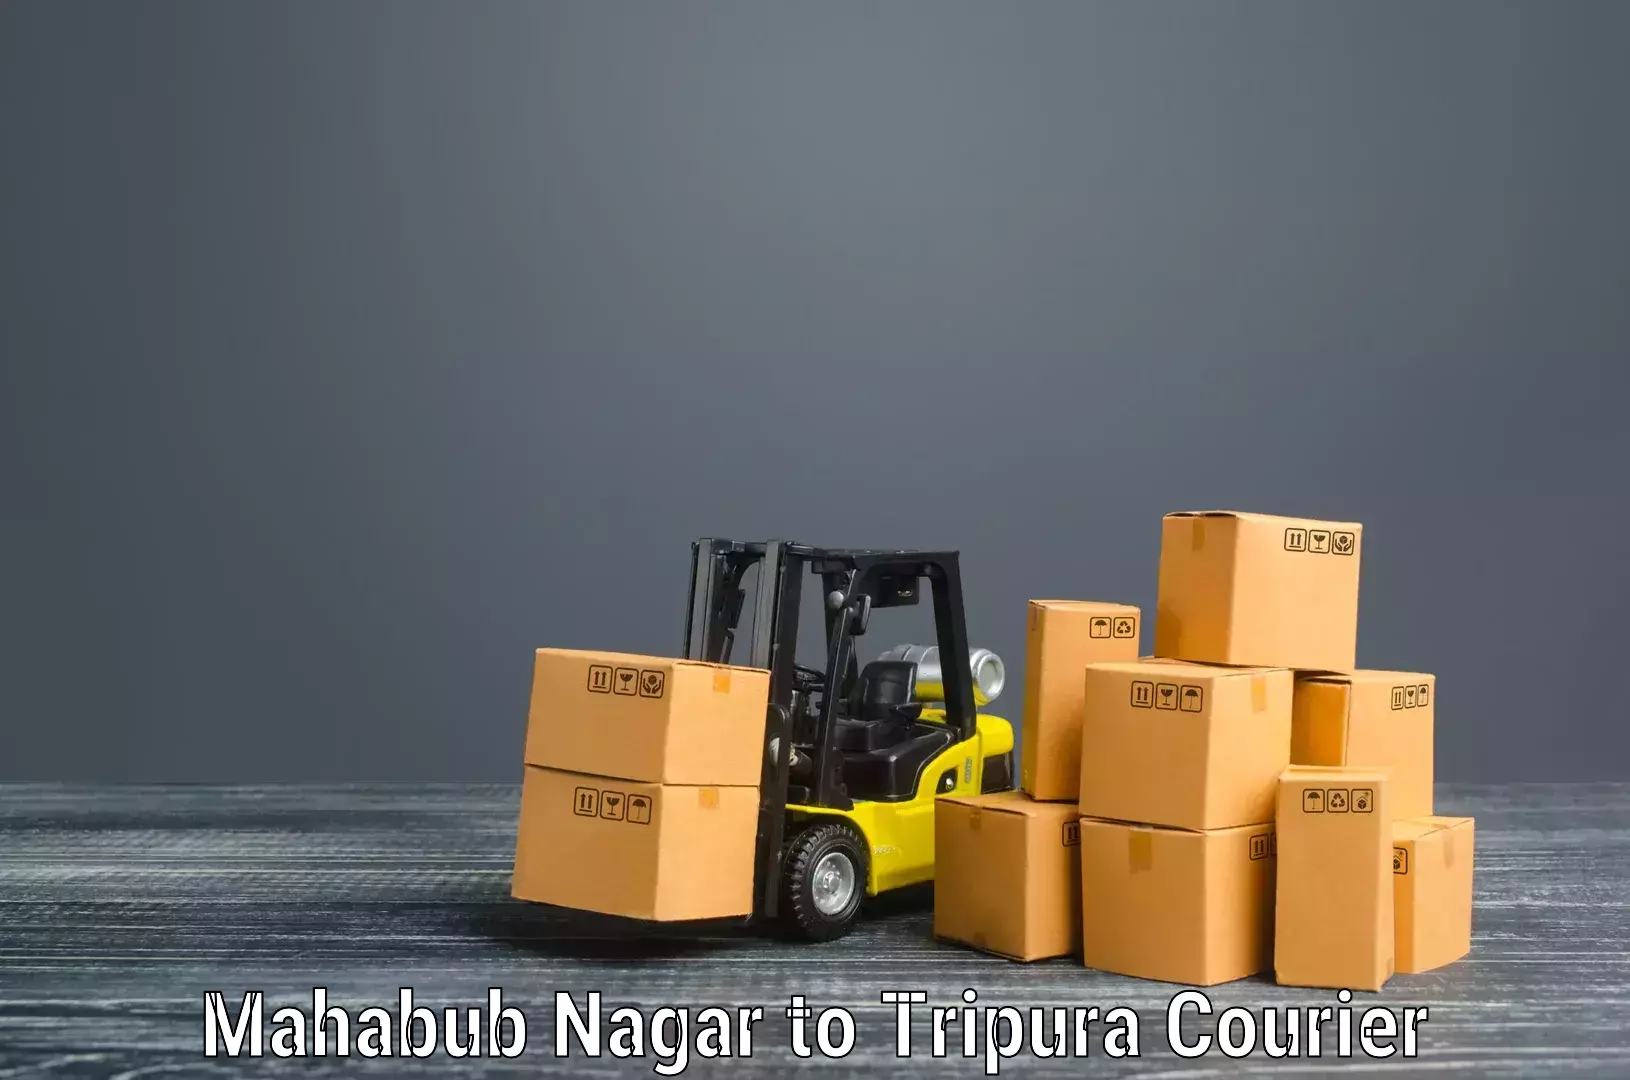 Professional moving company Mahabub Nagar to Udaipur Tripura